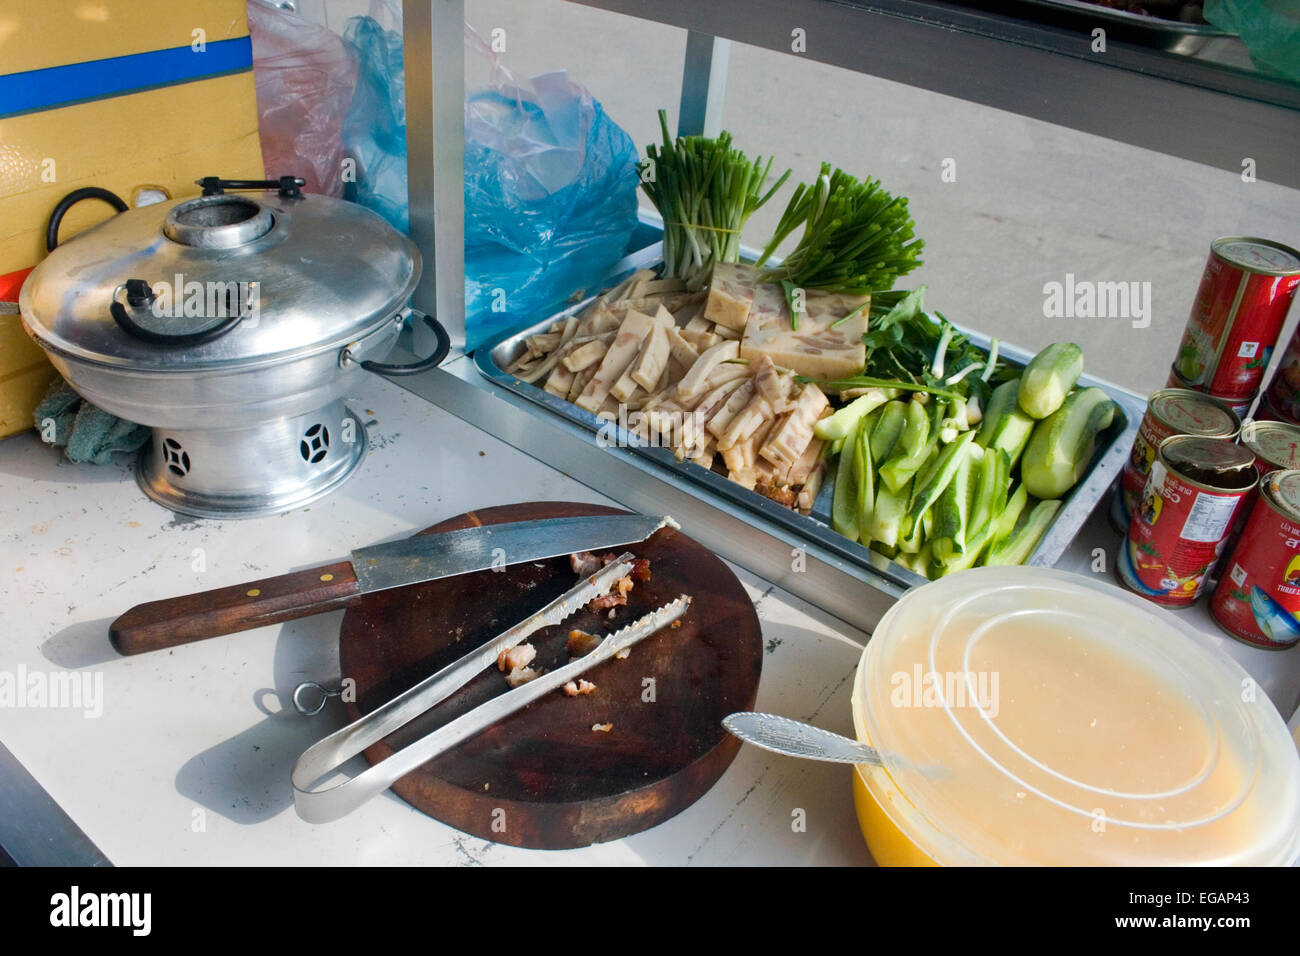 Eine Schneidebrett verwendet für das Schneiden von Fleisch für die Herstellung von Sandwiches wird auf einem mobilen Lebensmittel-Wagen in Kampong Cham, Kambodscha angezeigt. Stockfoto